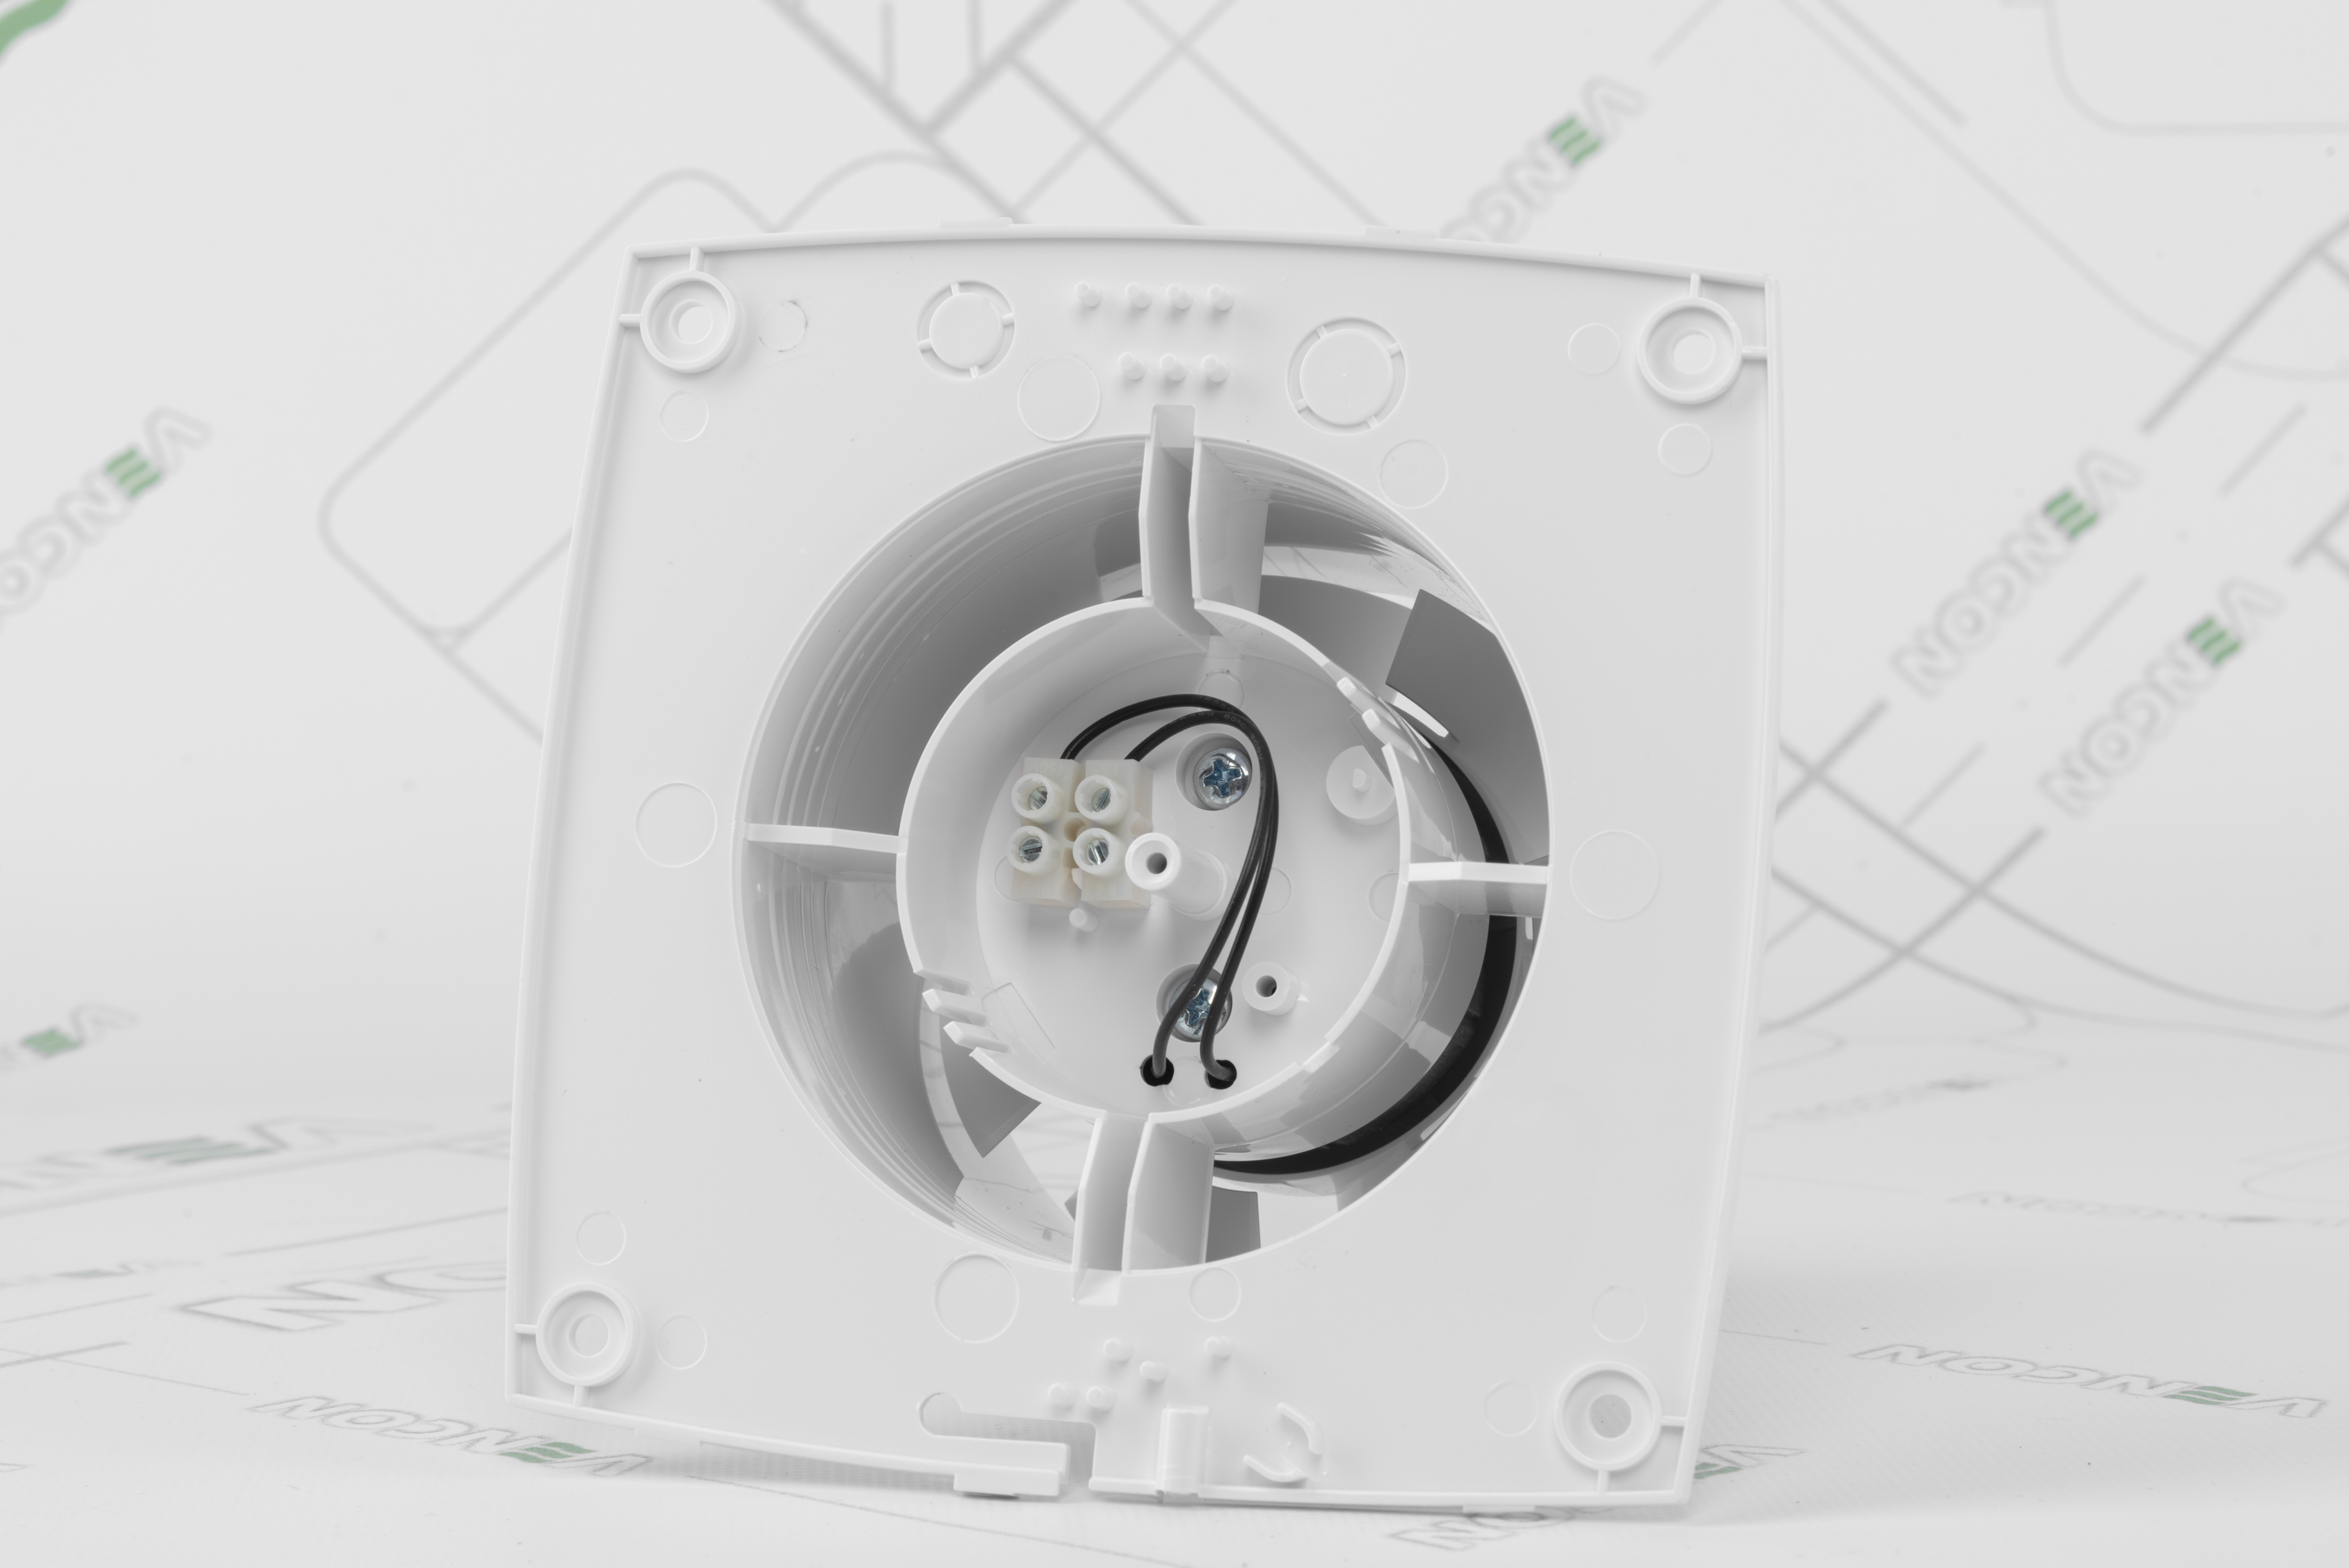 Вытяжной вентилятор Вентс 100 ЛД турбо отзывы - изображения 5